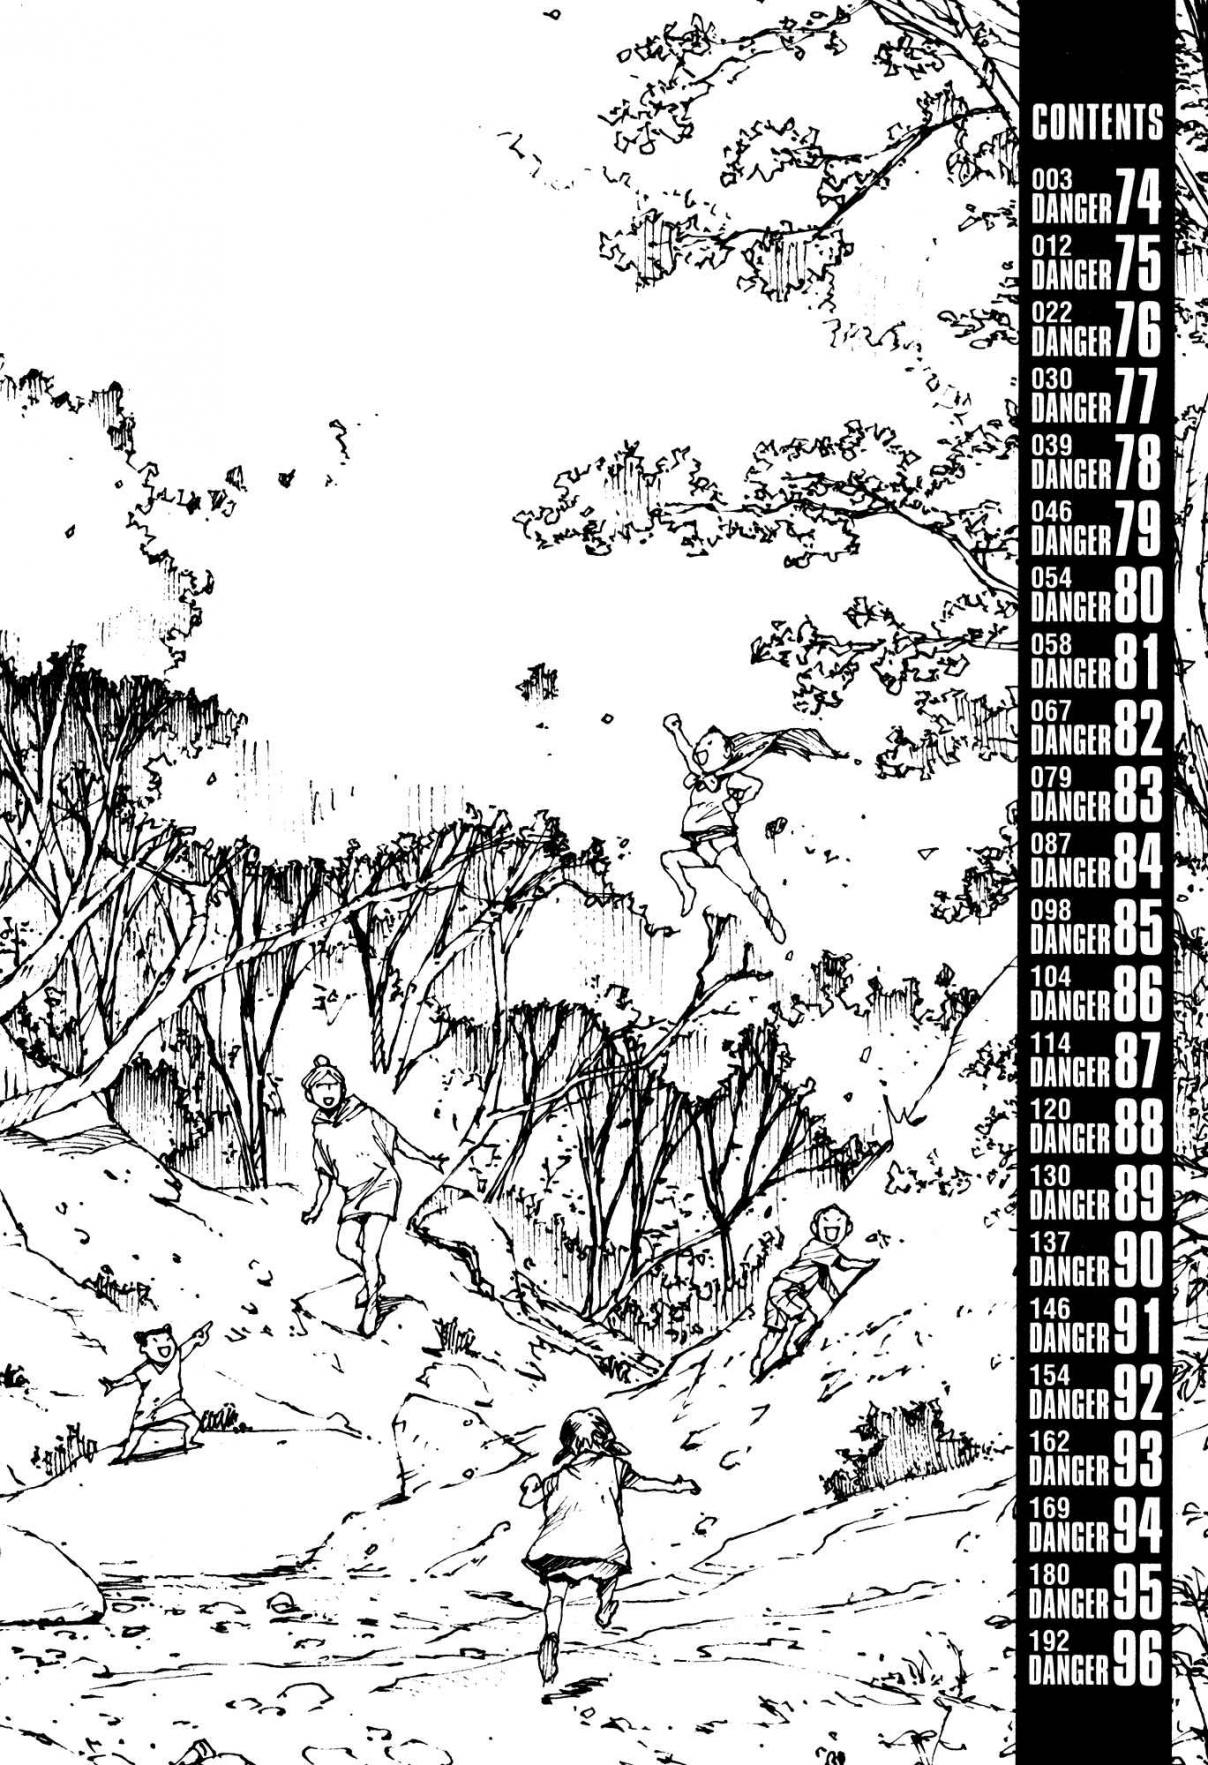 Survival: Shounen S no Kiroku Vol. 5 Ch. 74 Danger 74